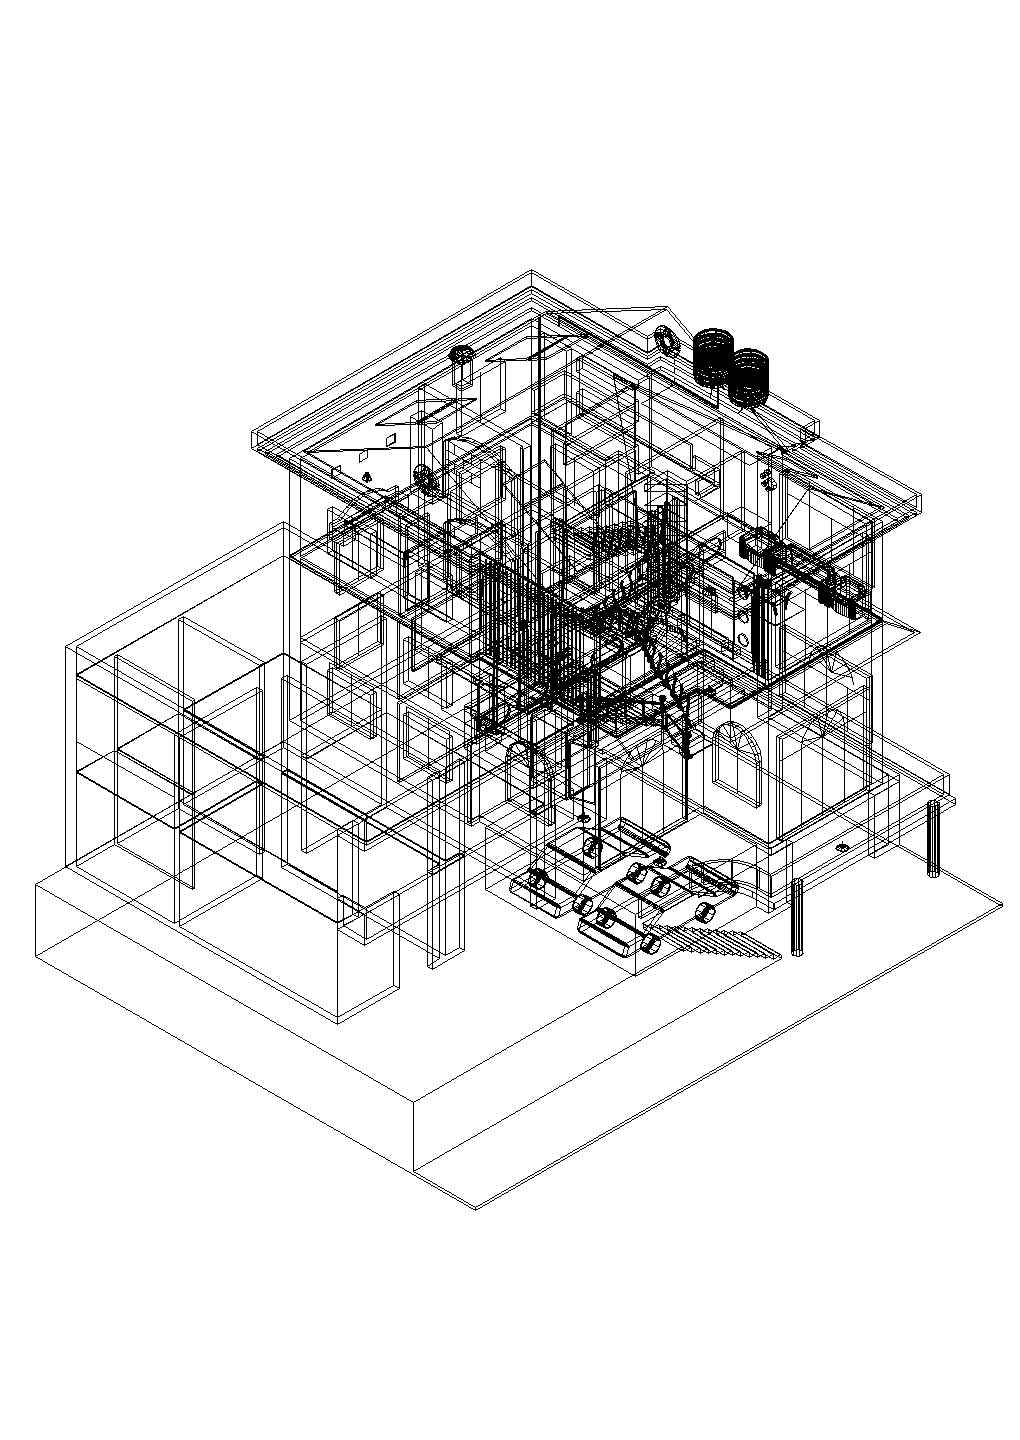 二层农村房屋三维立面模型图